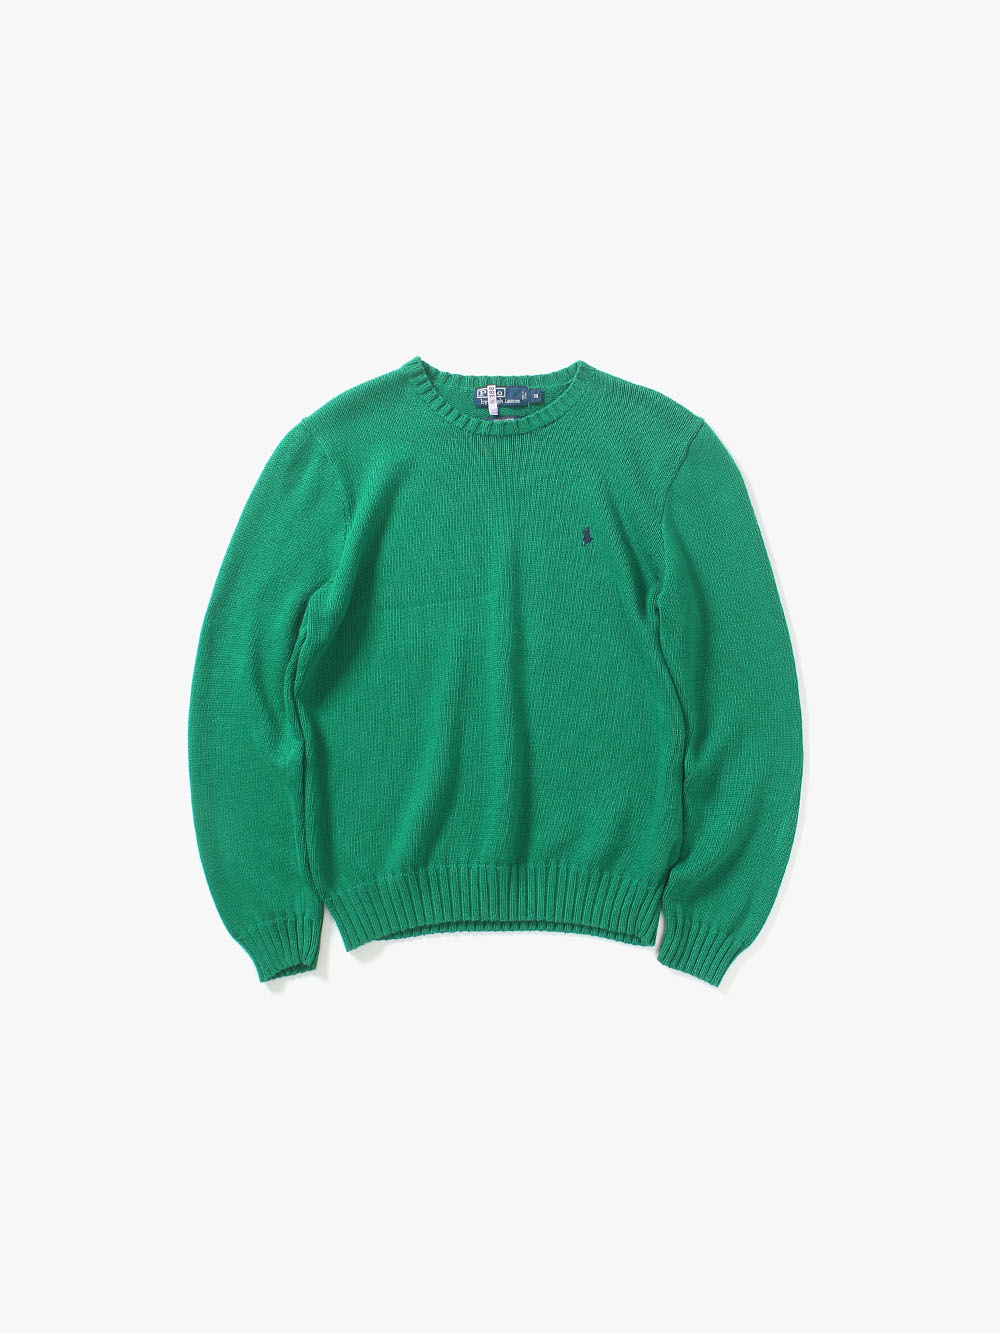 [ M ] Polo Ralph Lauren Sweater (6250)